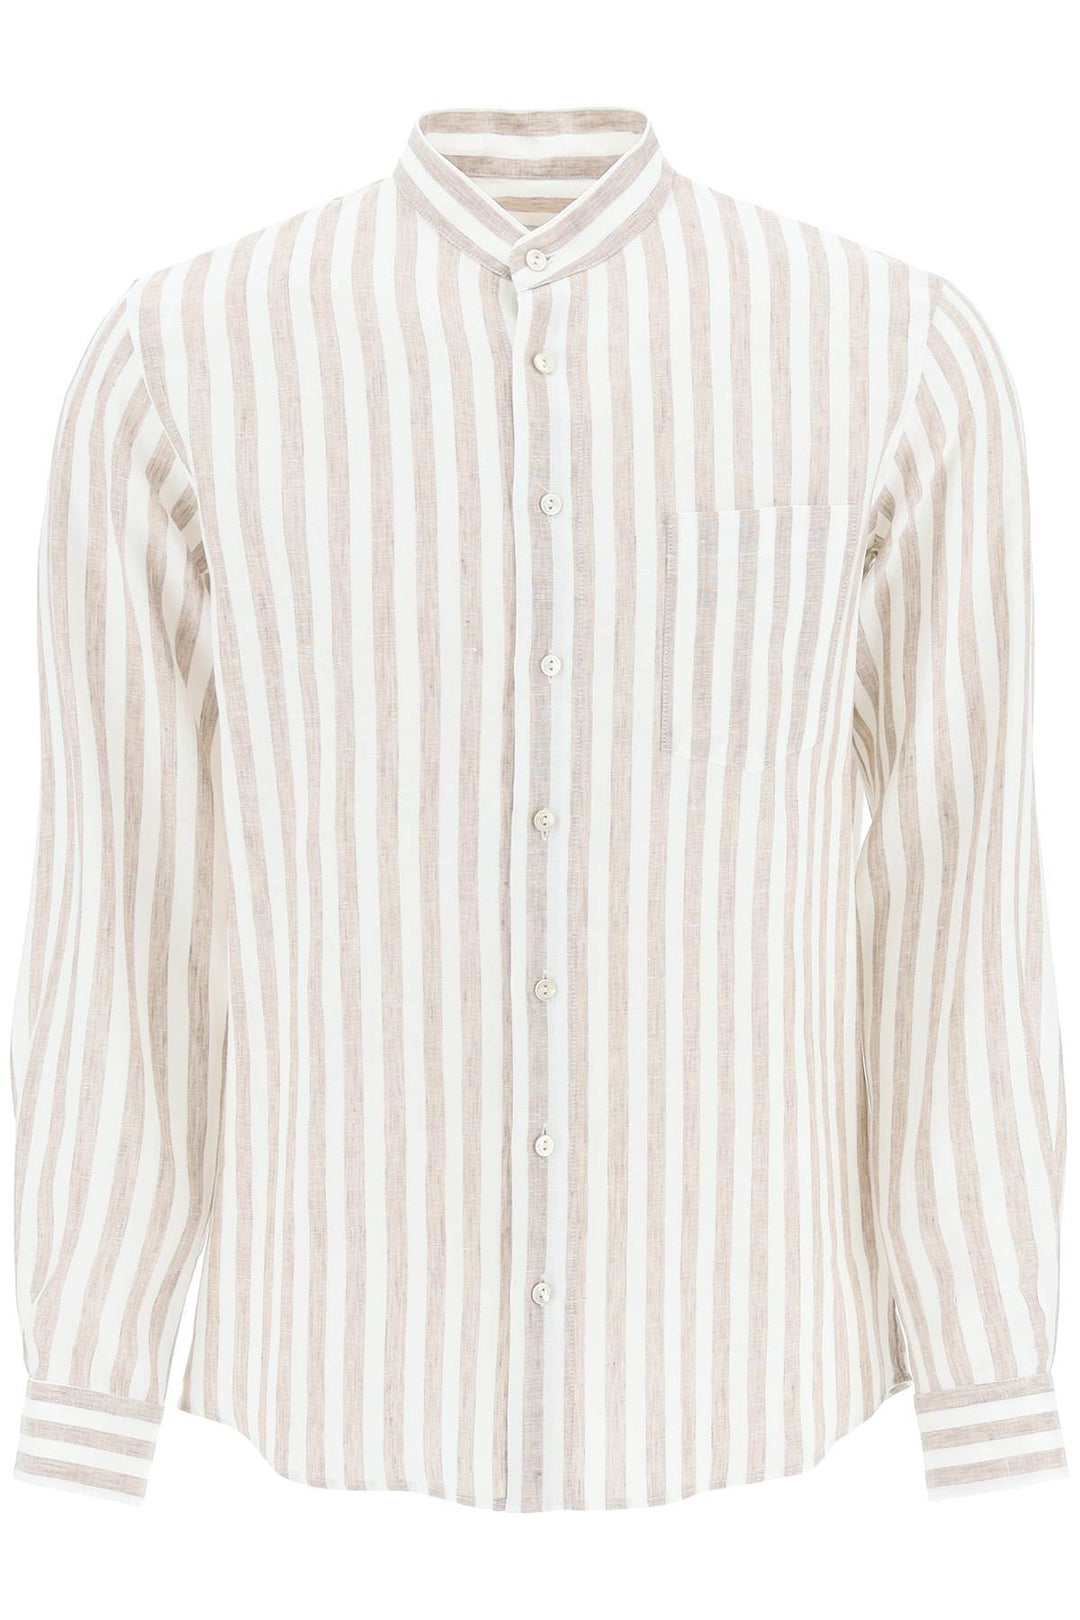 Agnona Striped Linen Shirt   White